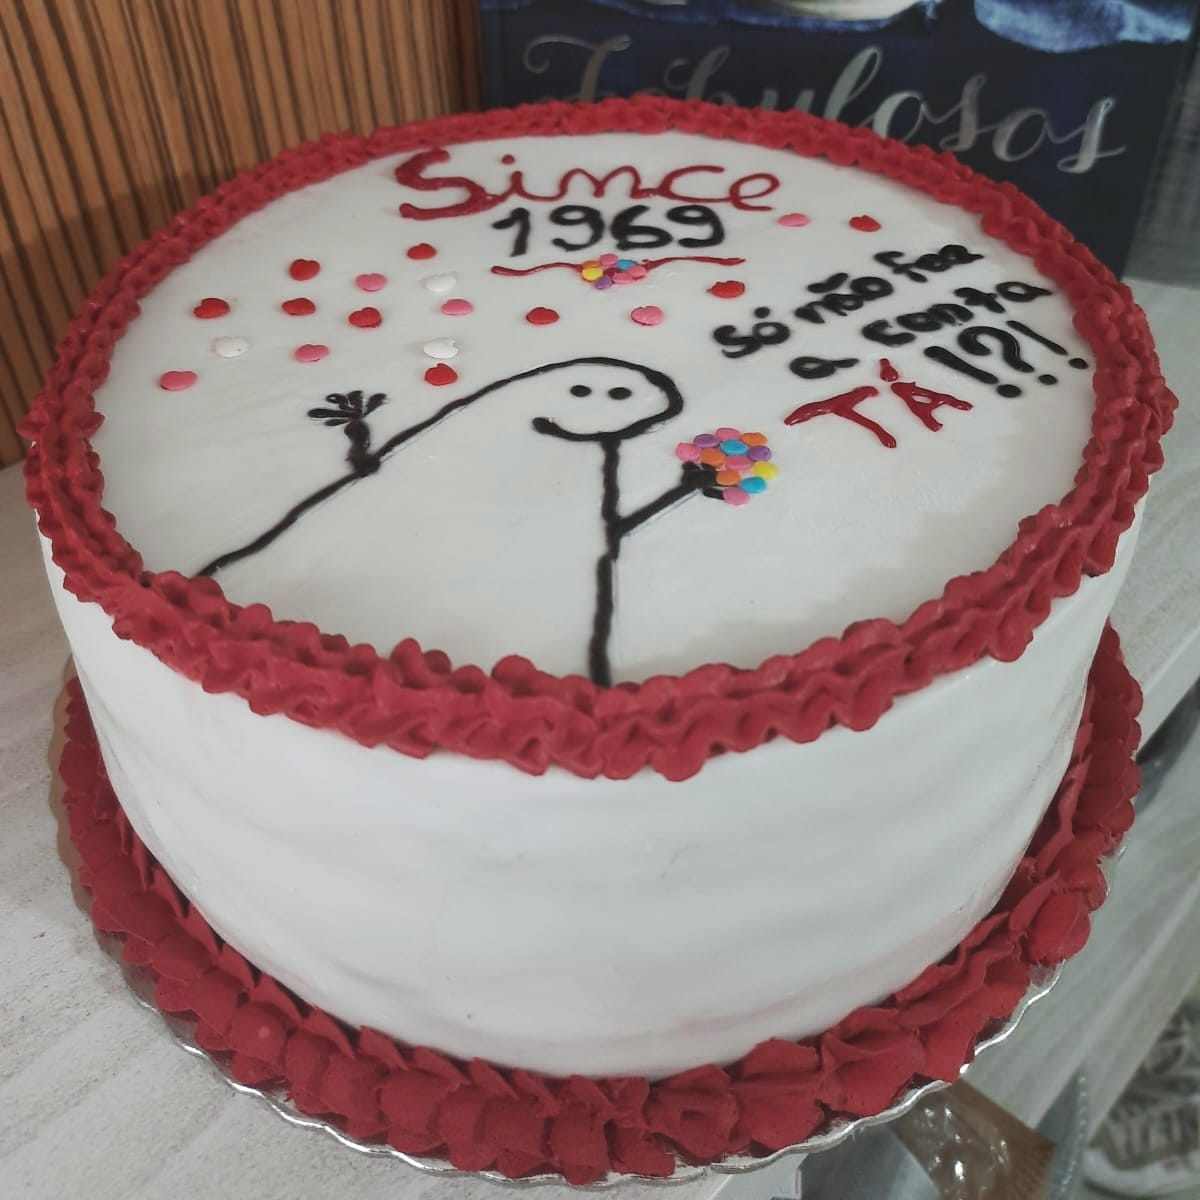 Bentô Cake: veja bolos famosos na internet feitos em SC - NSC Total